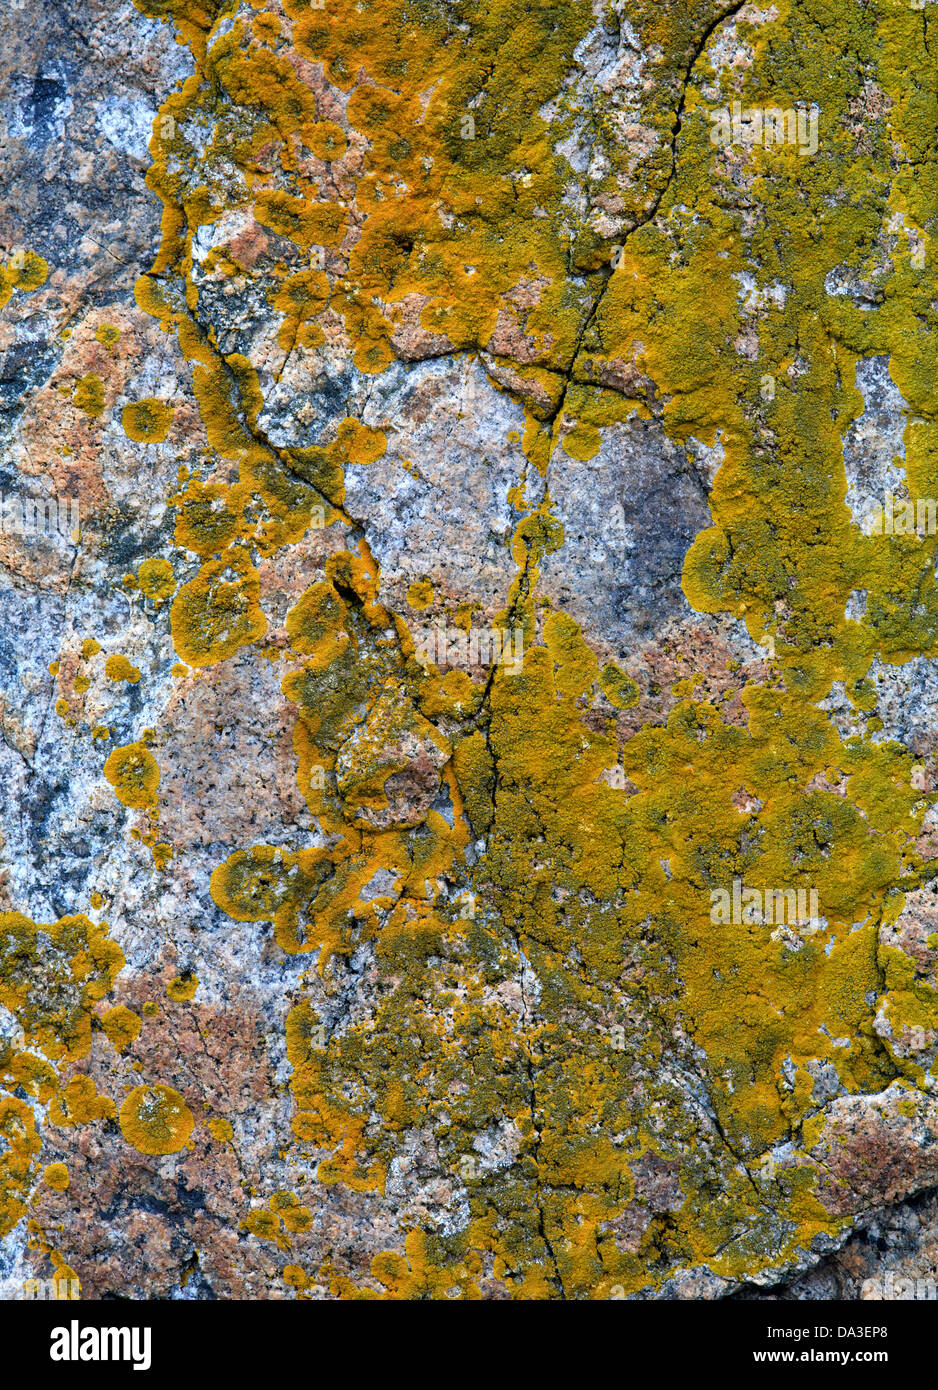 Orange, yellow and green lichens on granite rocks, Schoonic Peninsula, Maine Stock Photo